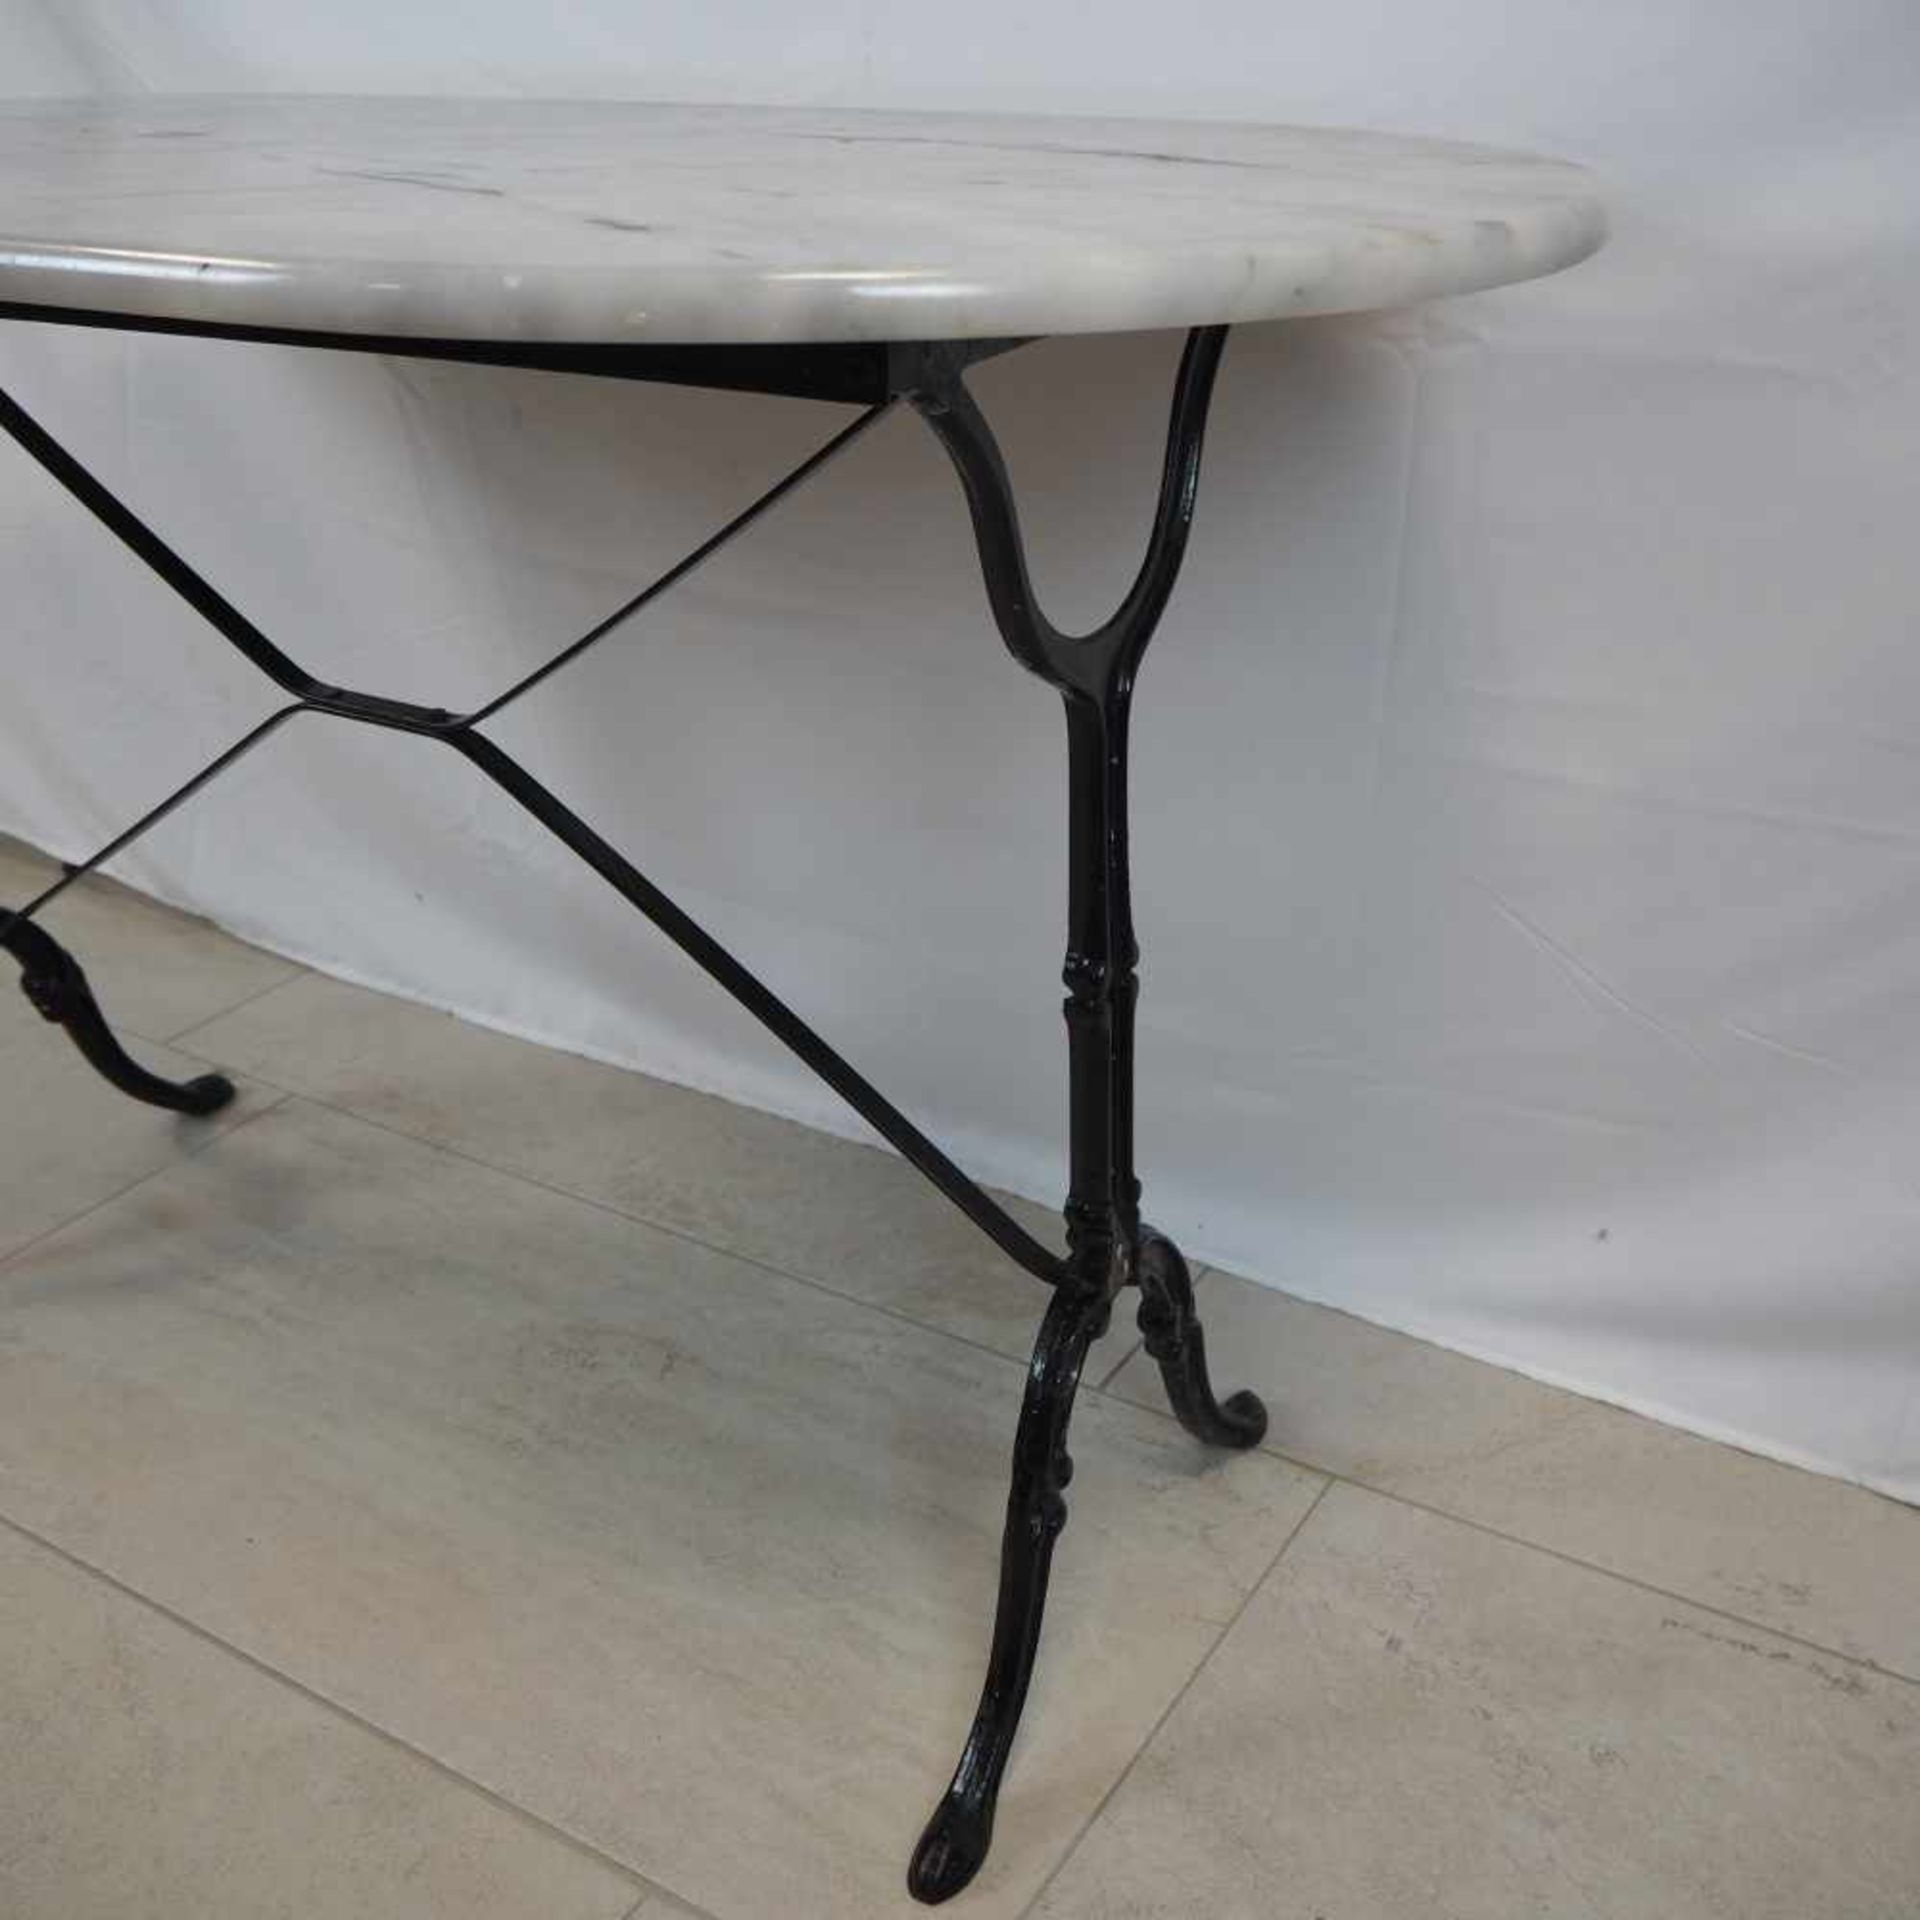 Kaffeehaus Tisch, 70er JahreSchwerer, ovaler Tisch mit verziertem Gusseisernen Fußteil. - Bild 2 aus 2